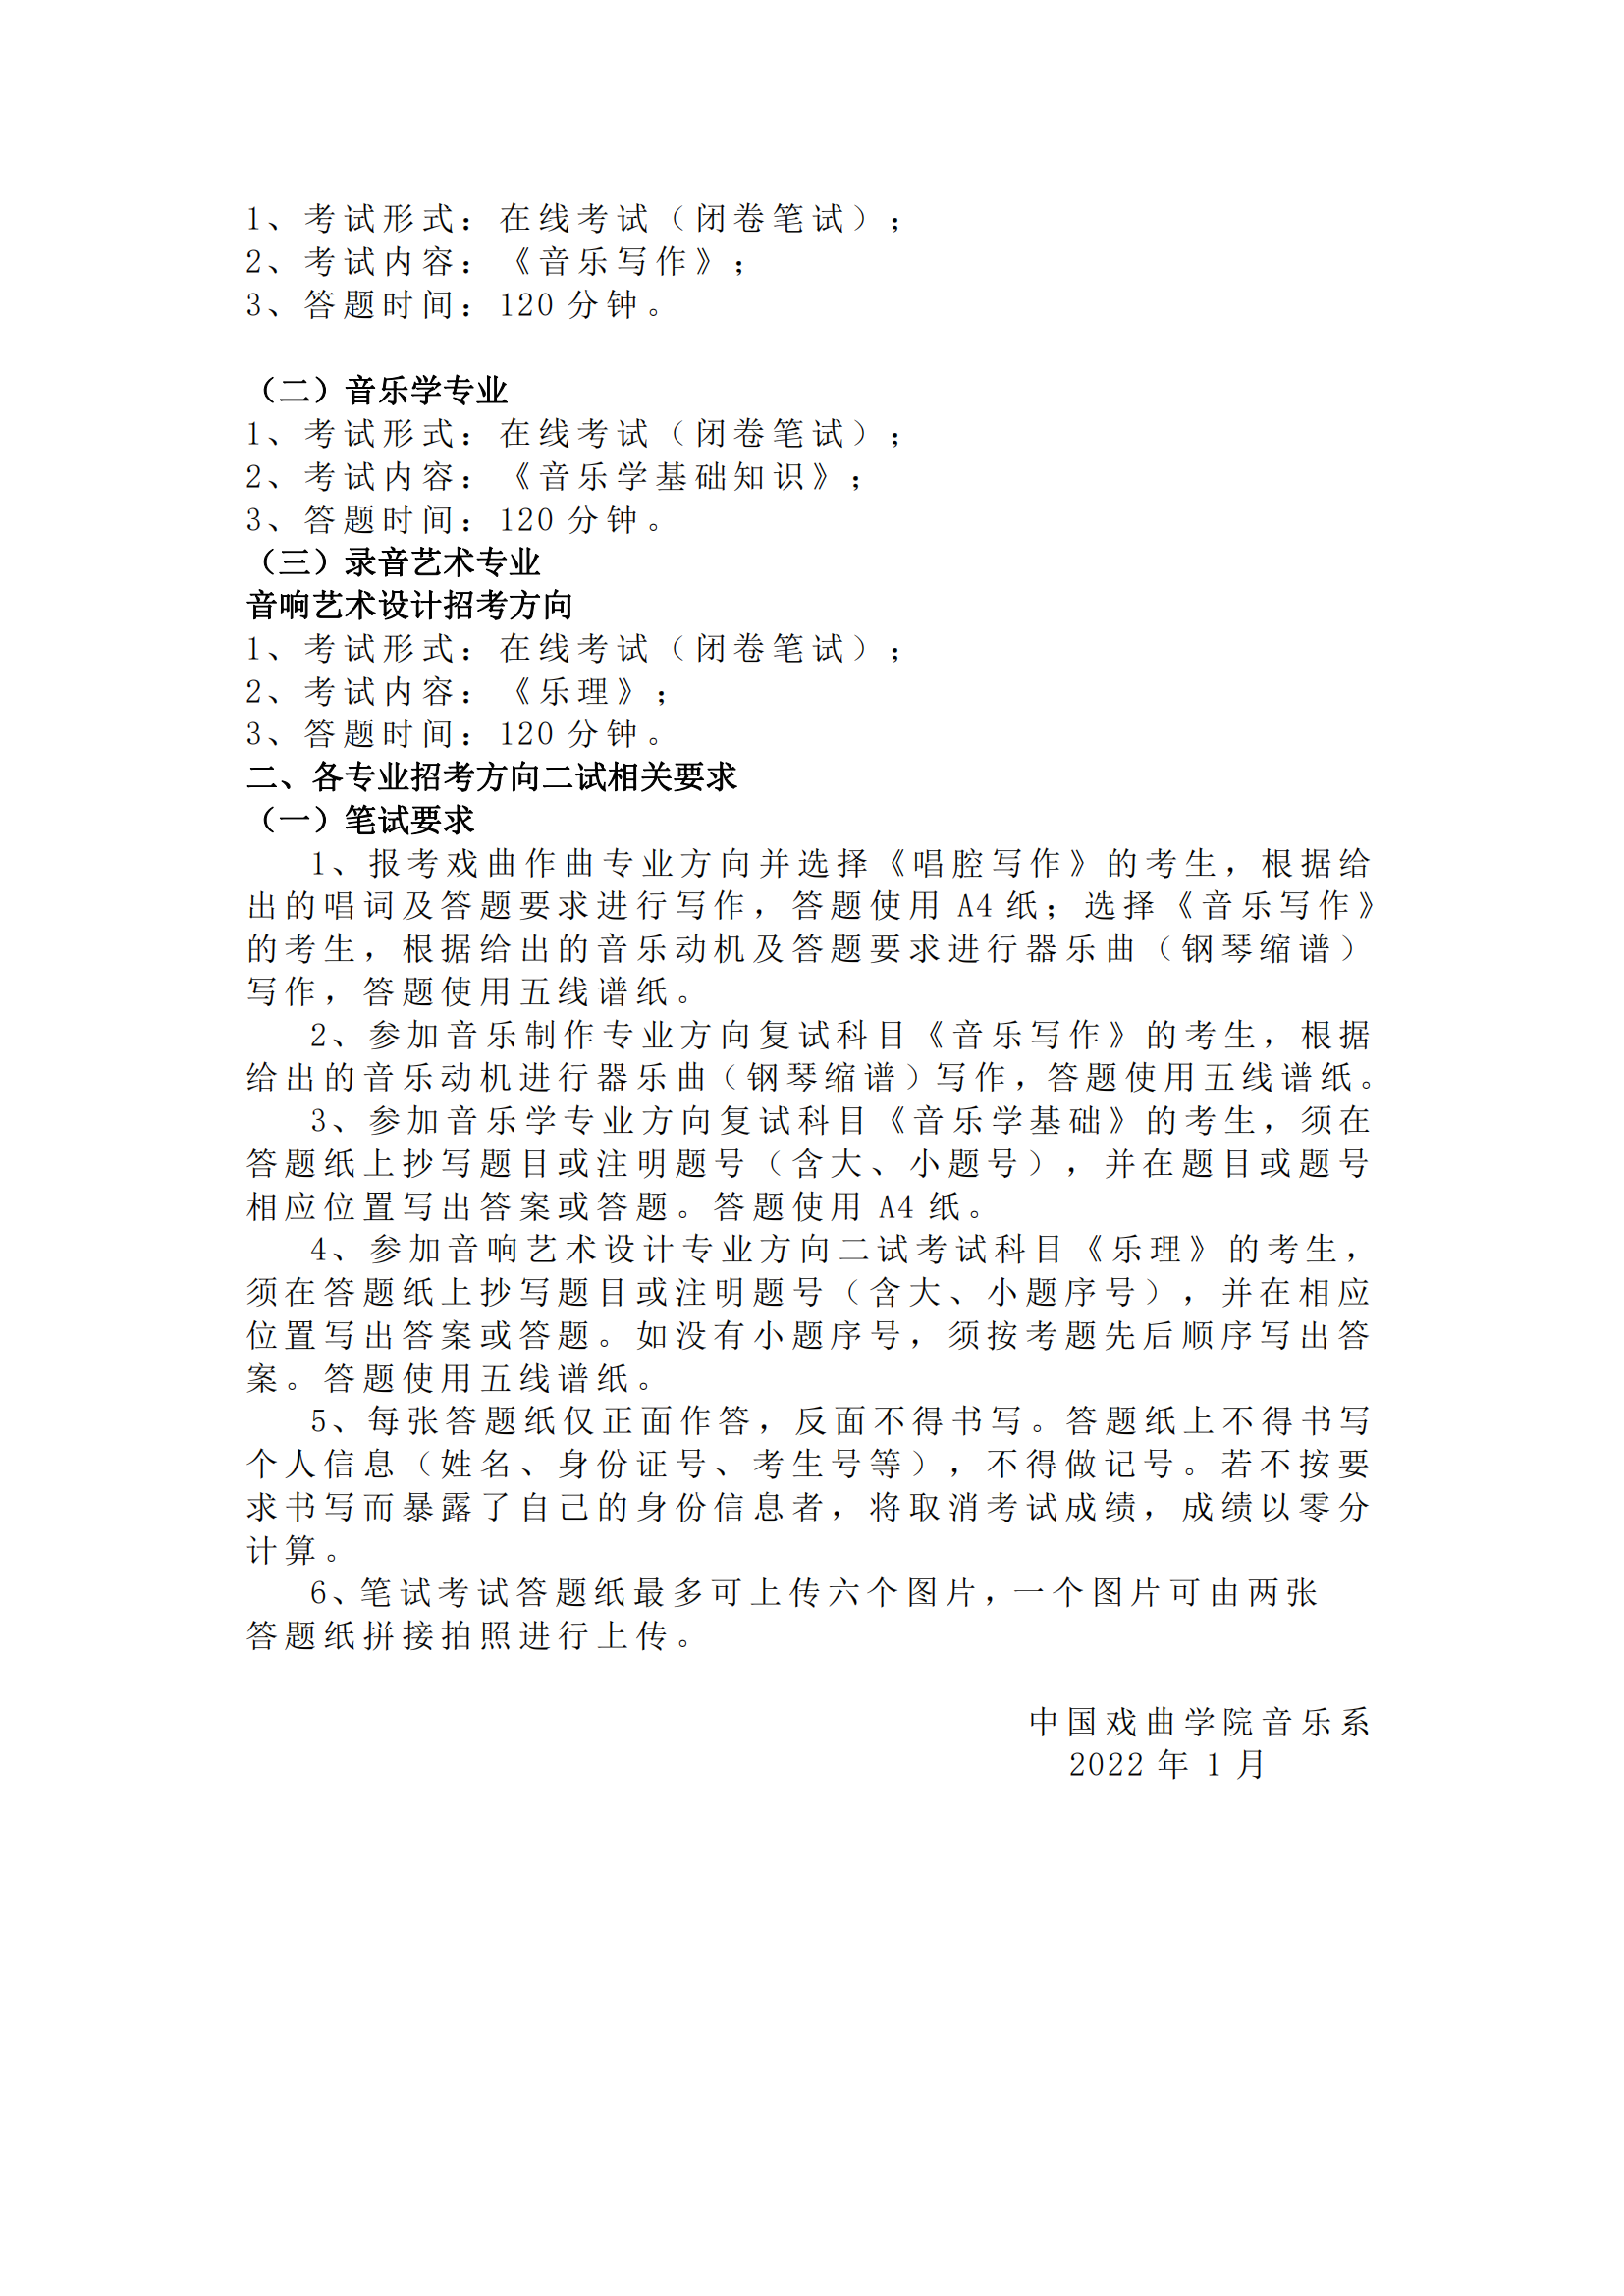 中国戏曲学院 2022 年本科招生 音乐系专业二试线上考试内容与要求_01.png